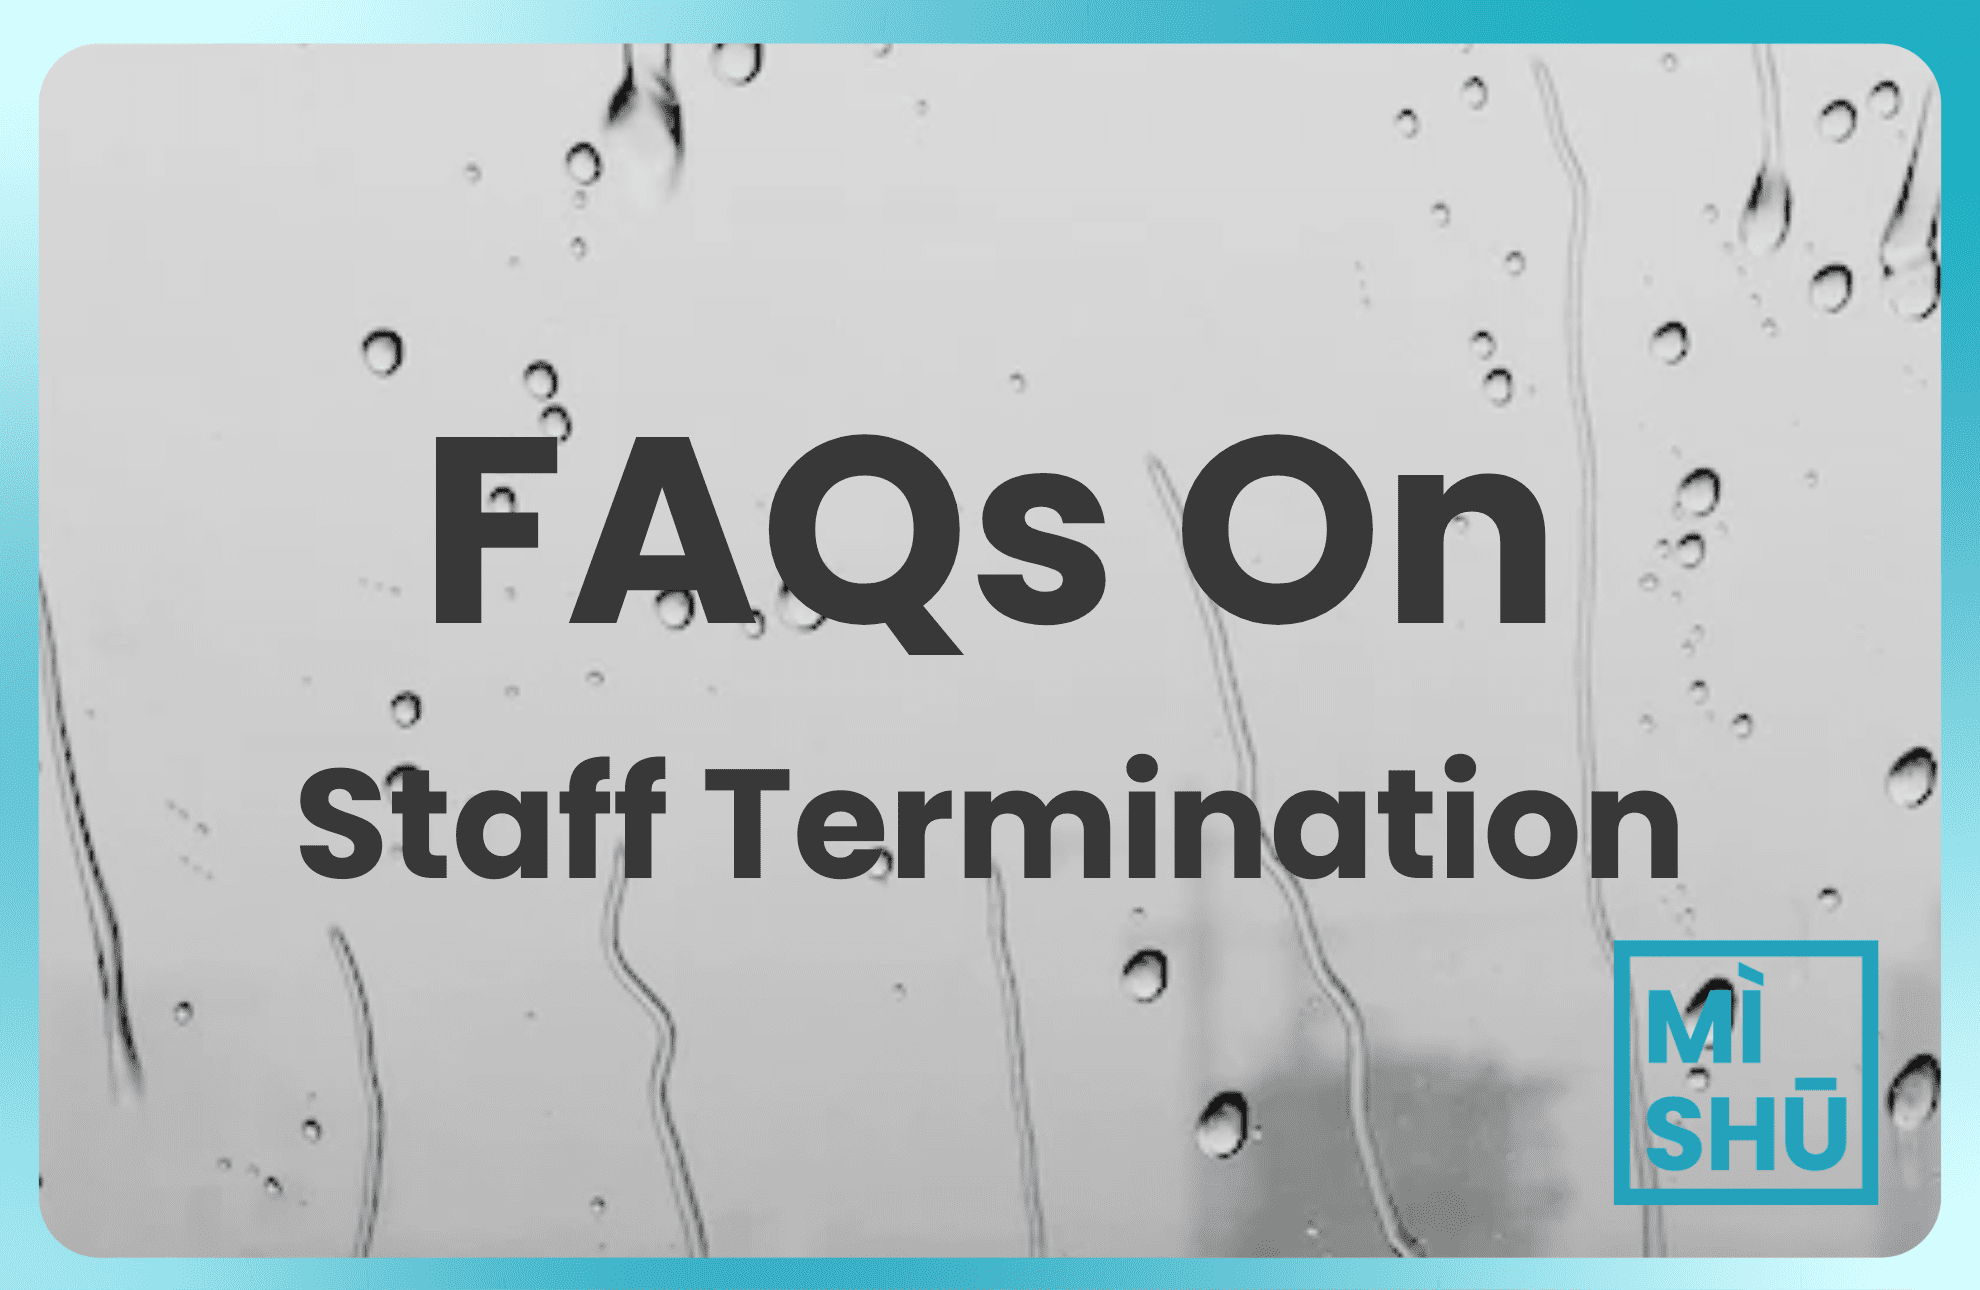 faq on employee termination in malaysia